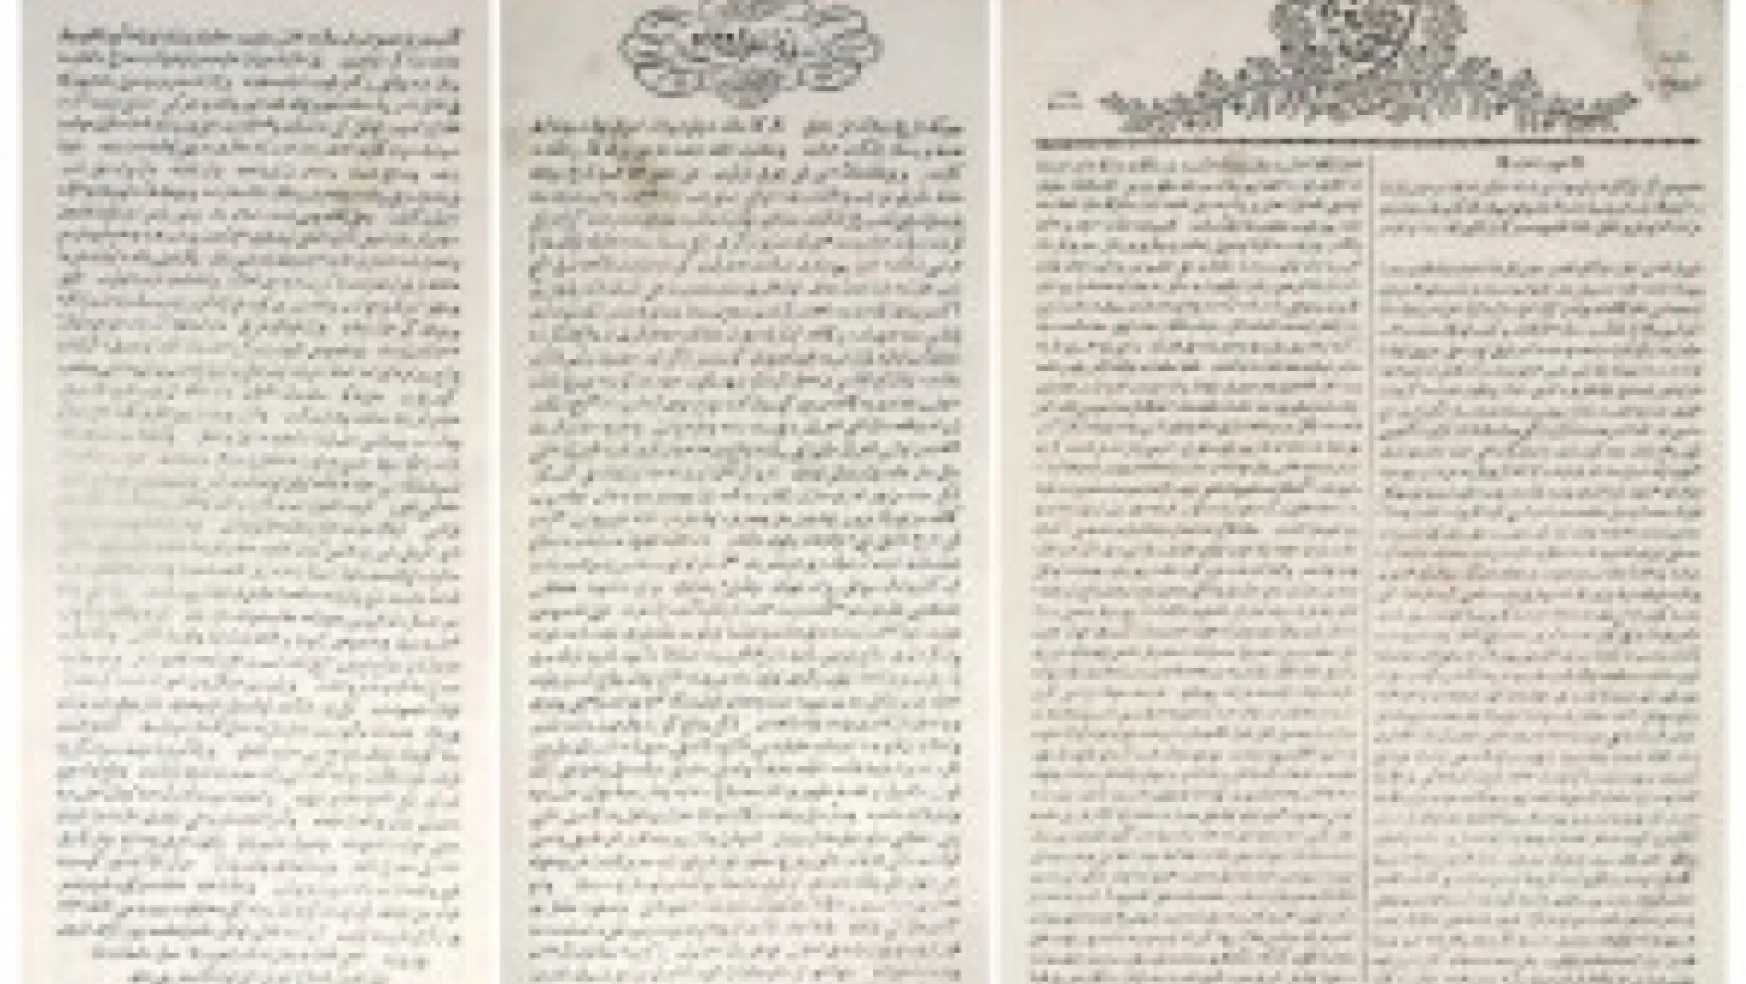 Osmanlı Devleti'nin 19. yüzyılın ilk yarısında basına karşı tutumu nasıldır?